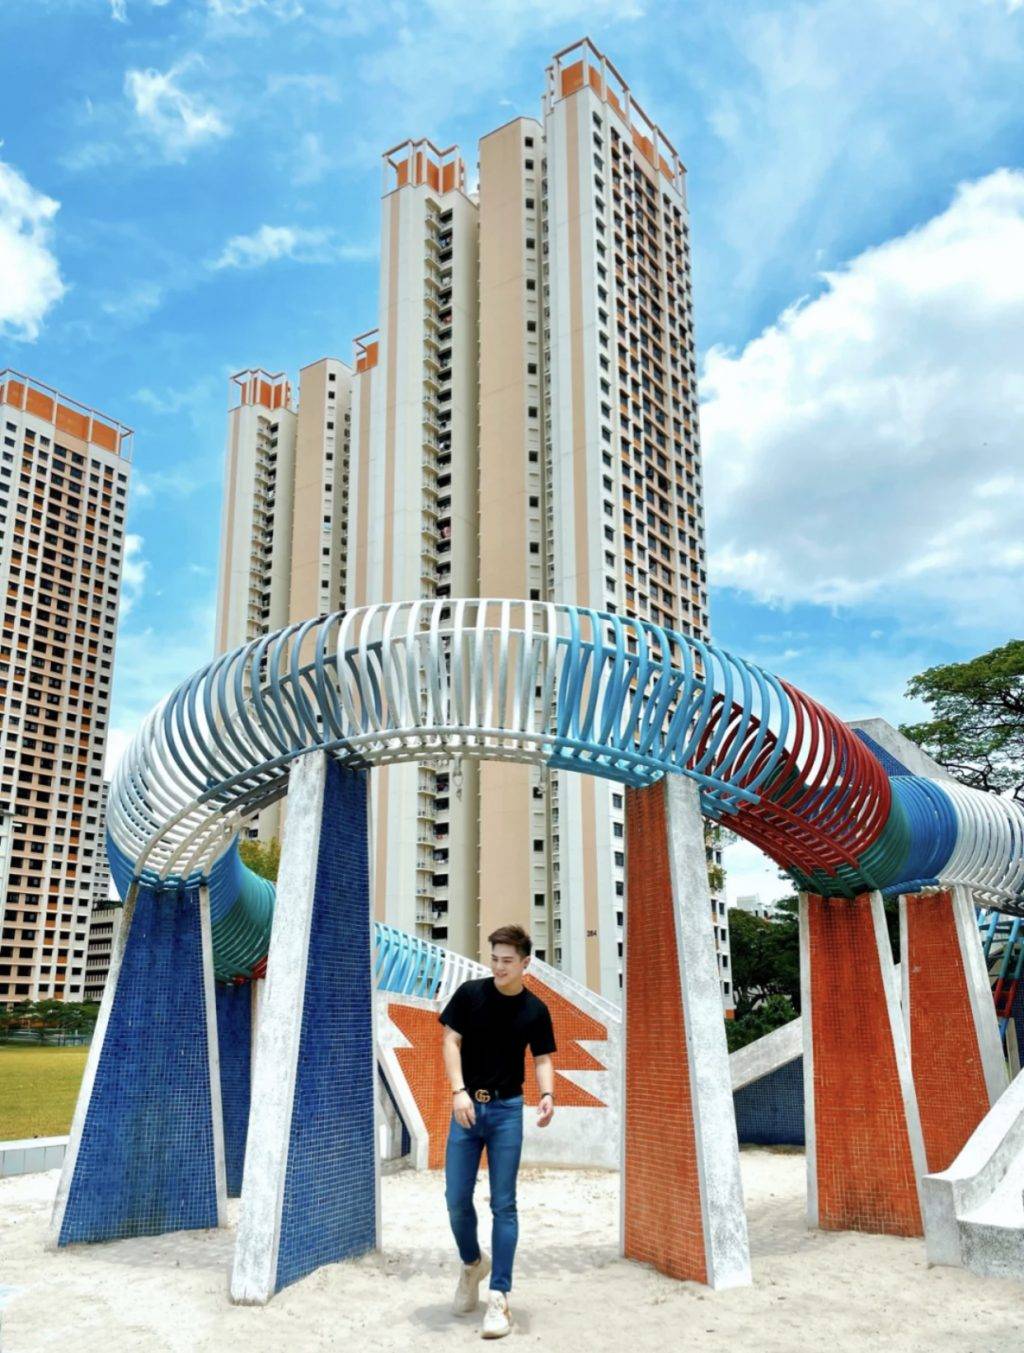 最老游乐场⏳新加坡“大佬级别”游乐场😏 标志性龙头、年代感设施，感受童年快乐回忆